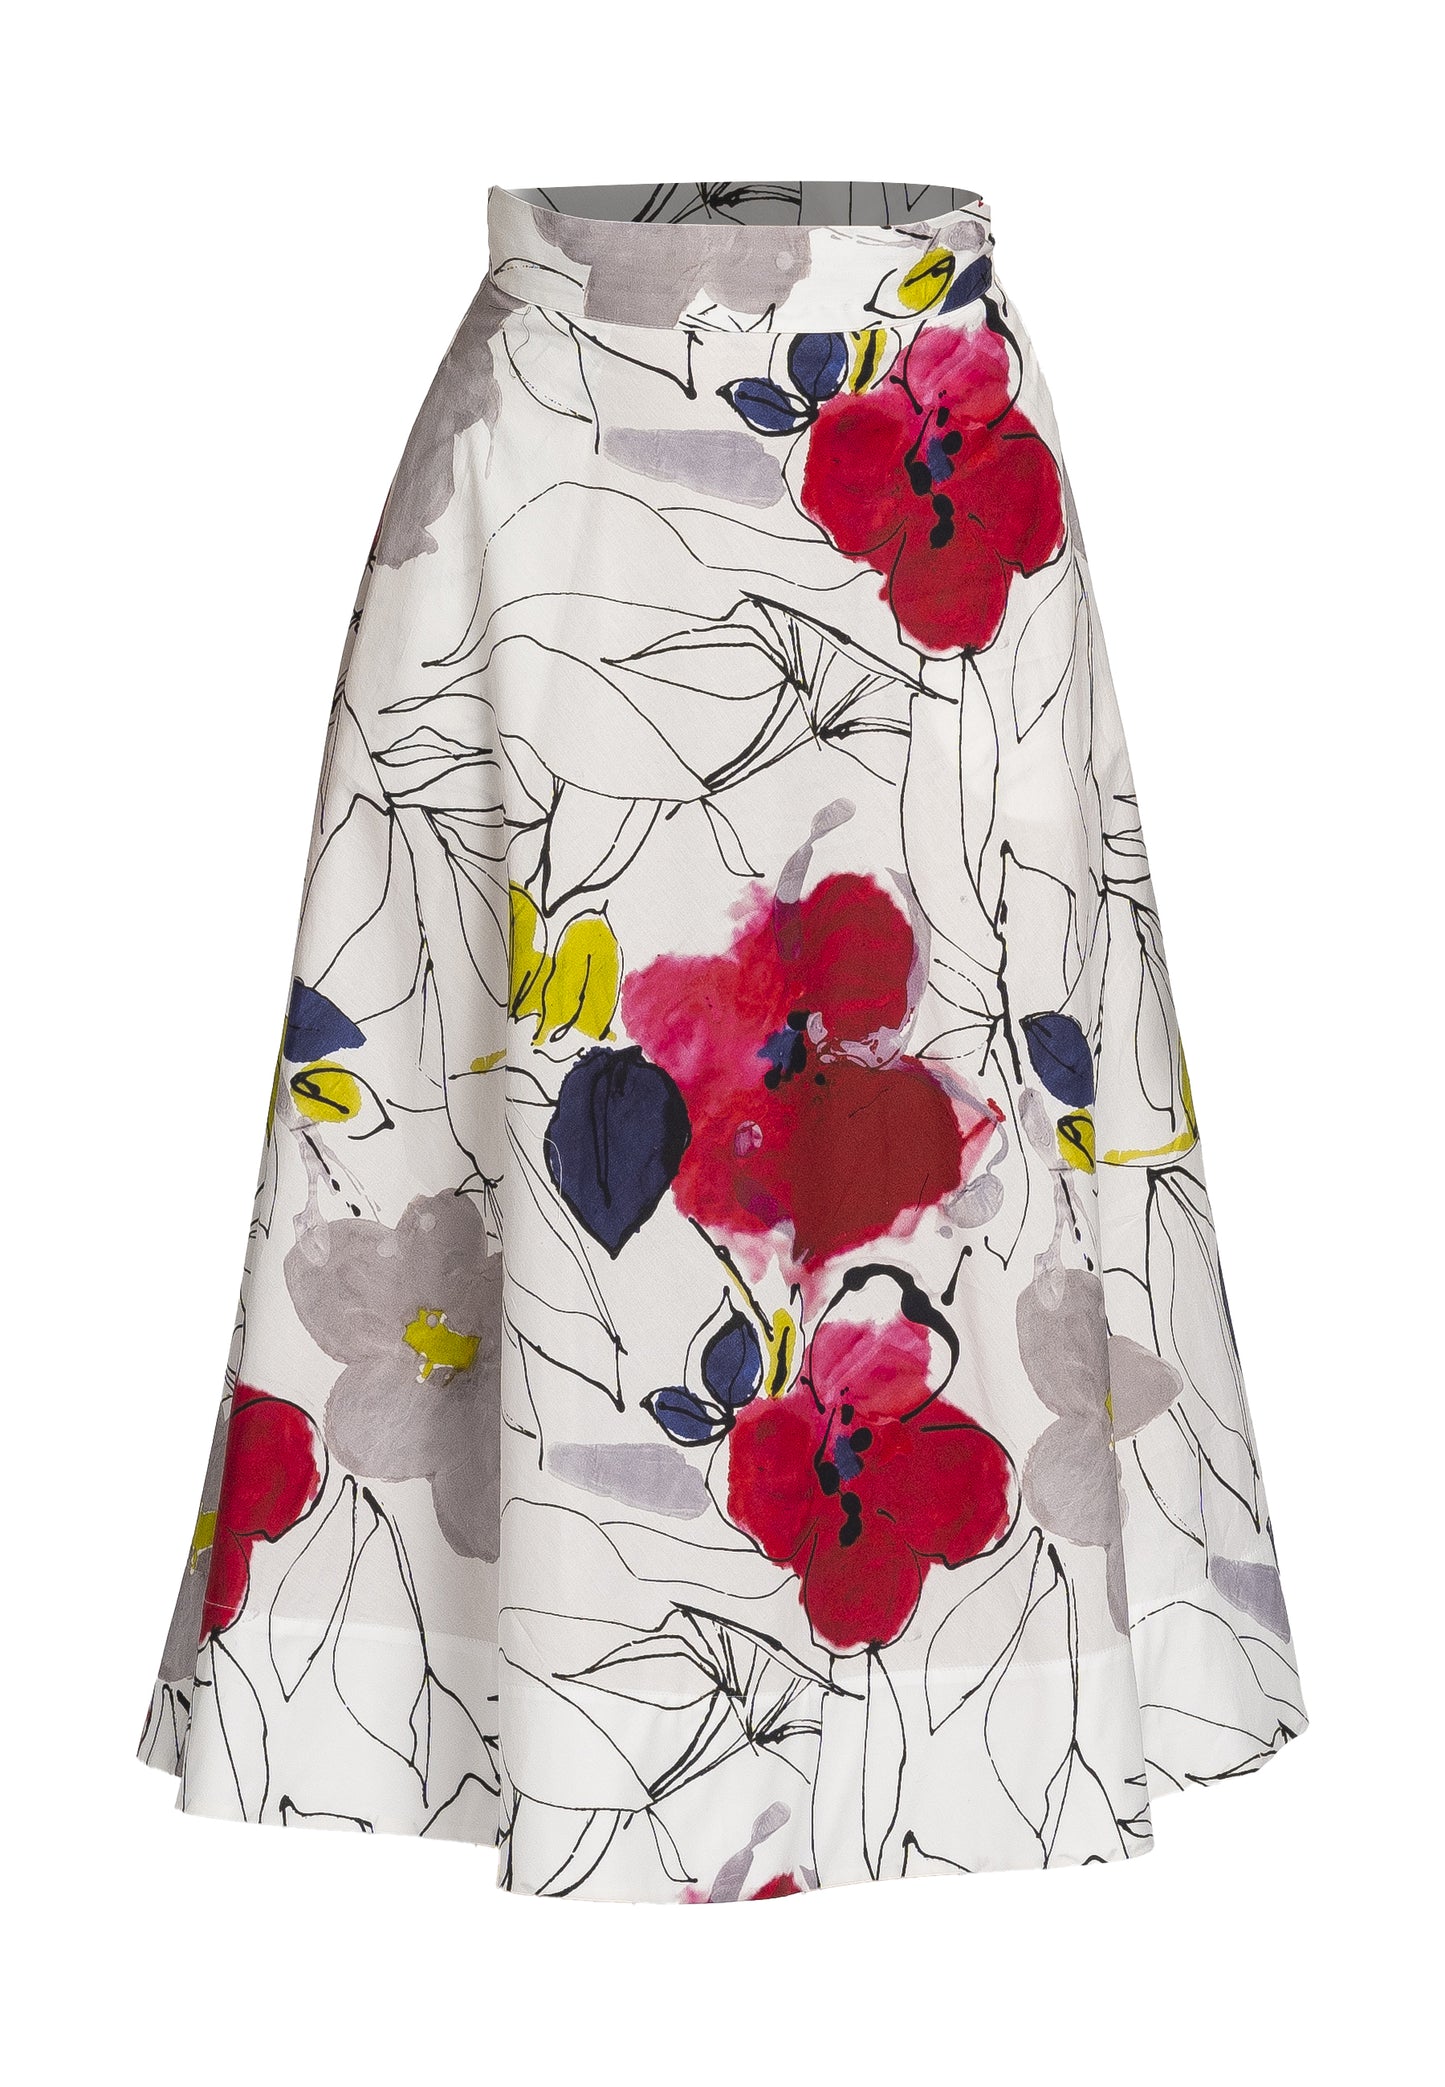 floral print maxi skirt, white background skirt, printed cotton skirt, full skirt with pockets, feminine and elegant skirt, comfortable and breathable skirt